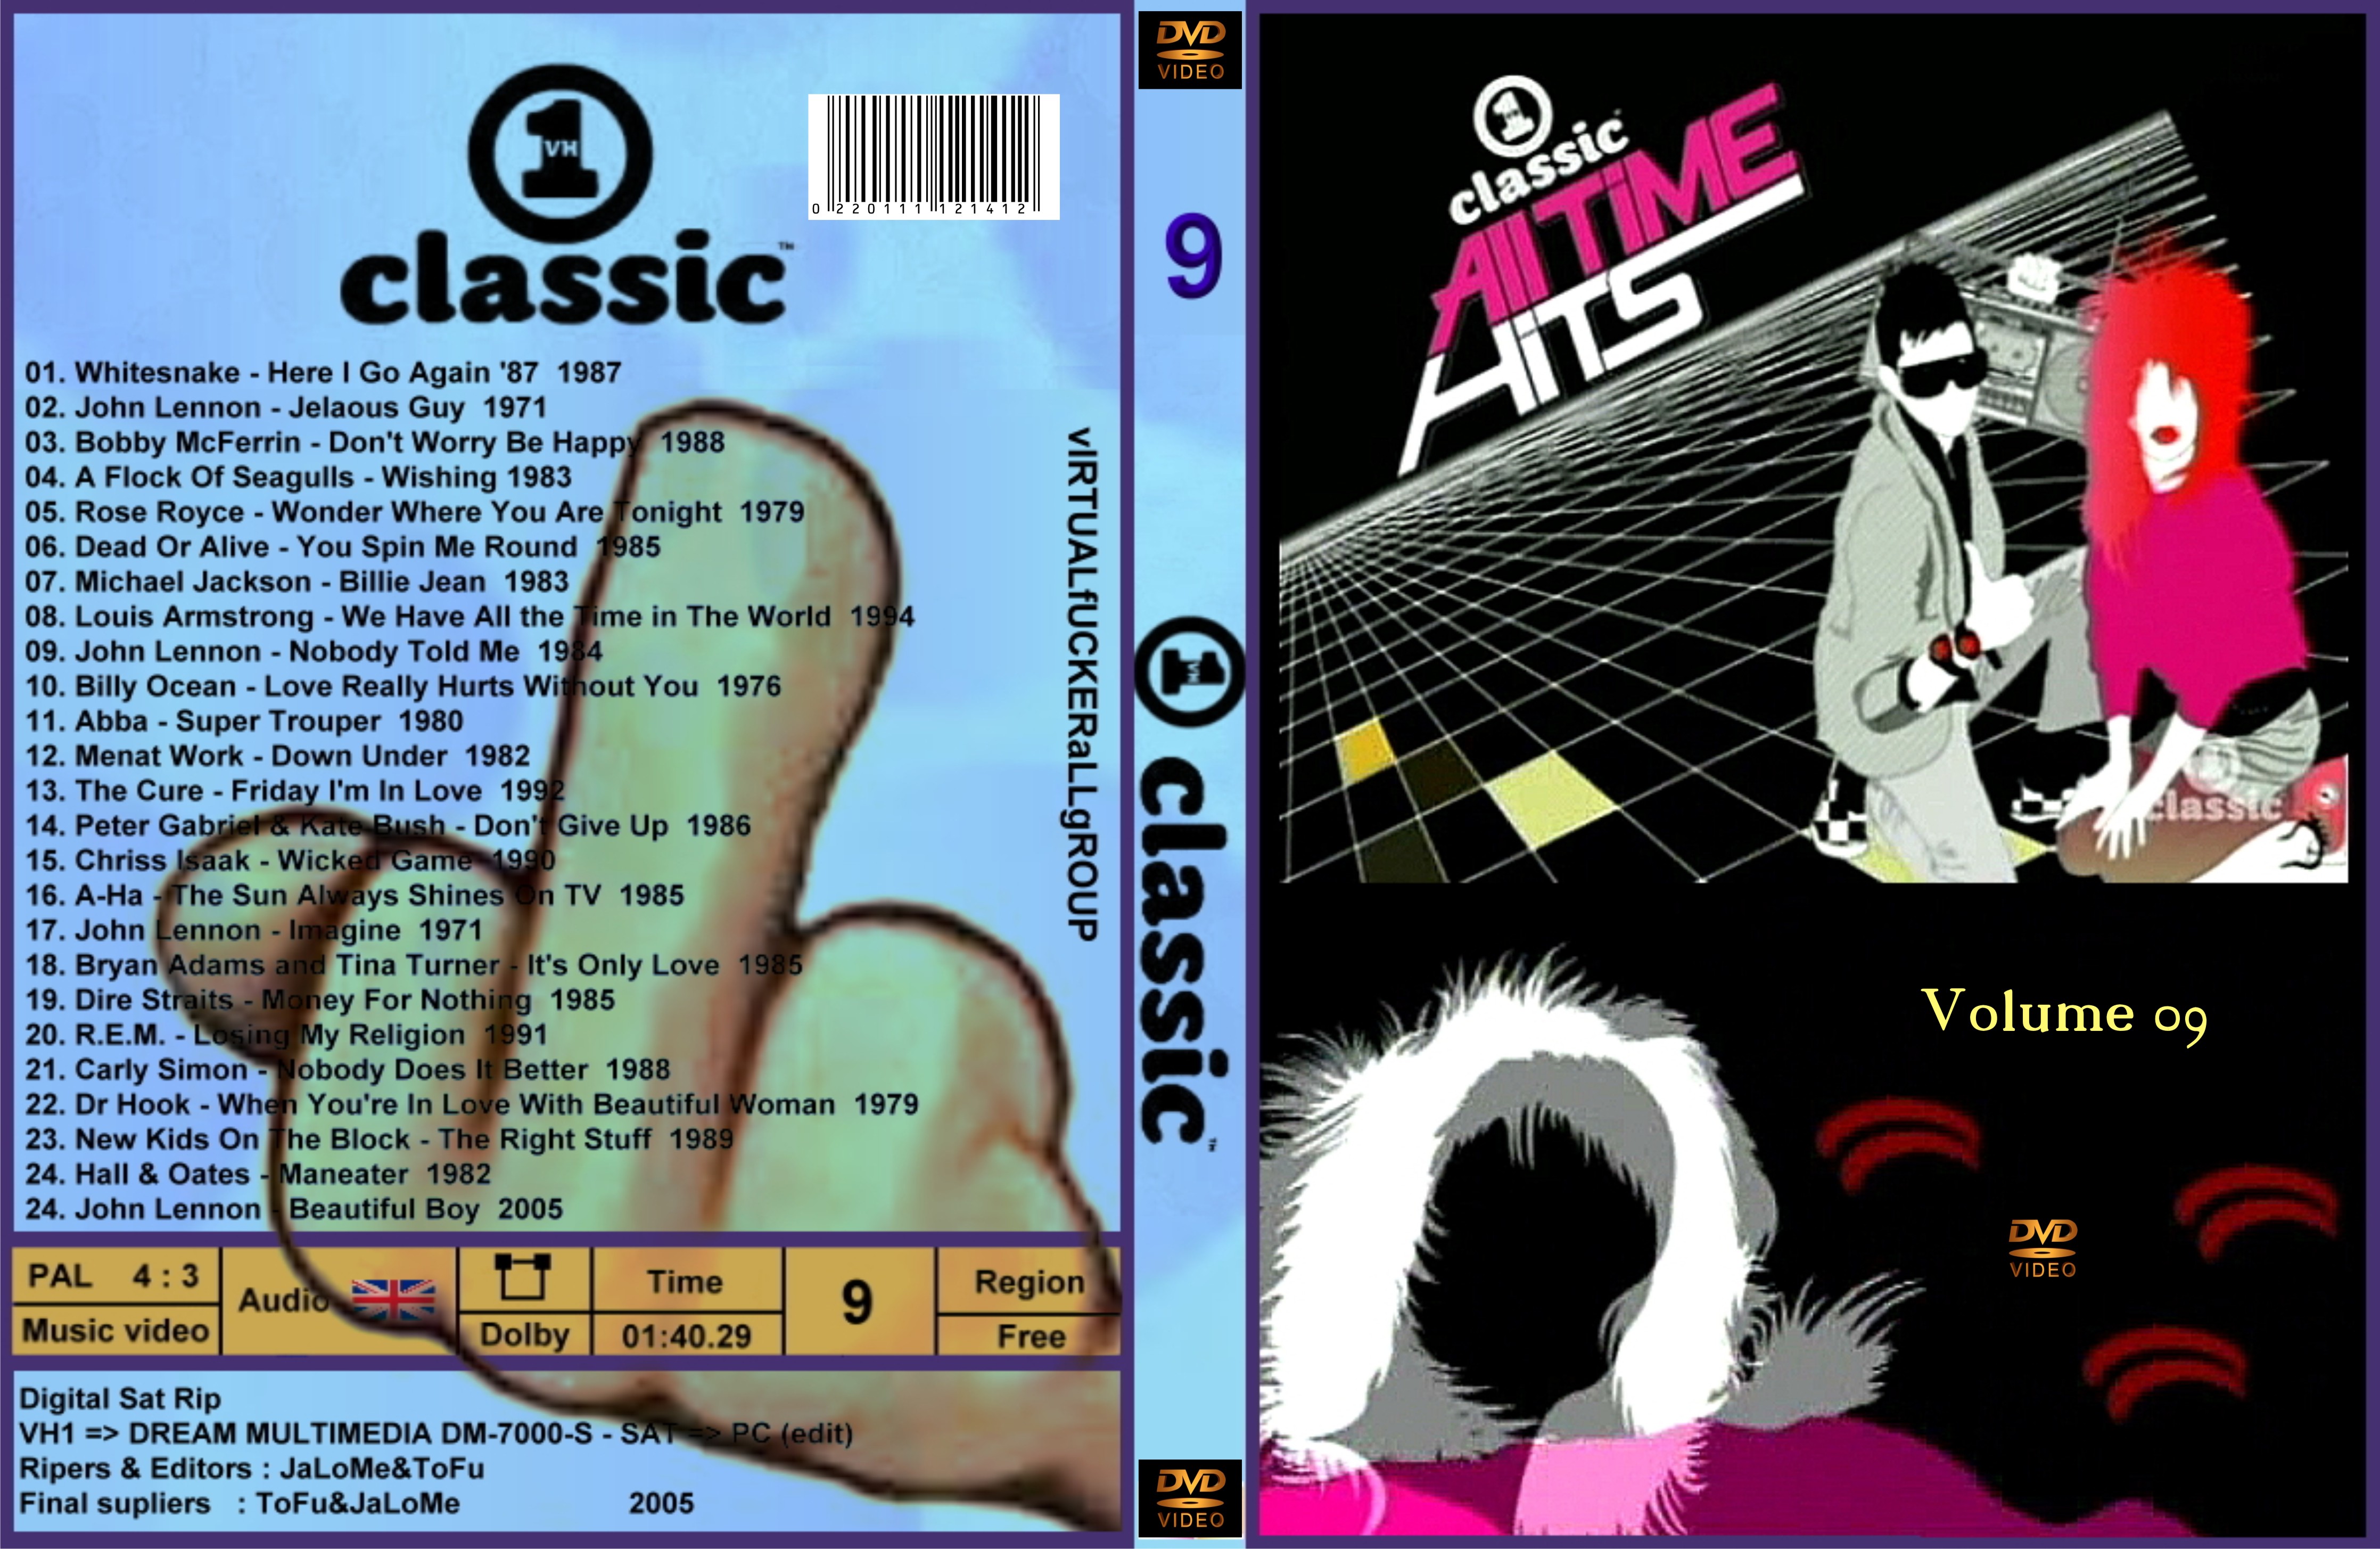 VH1 - All Classic Hits - DVD 9